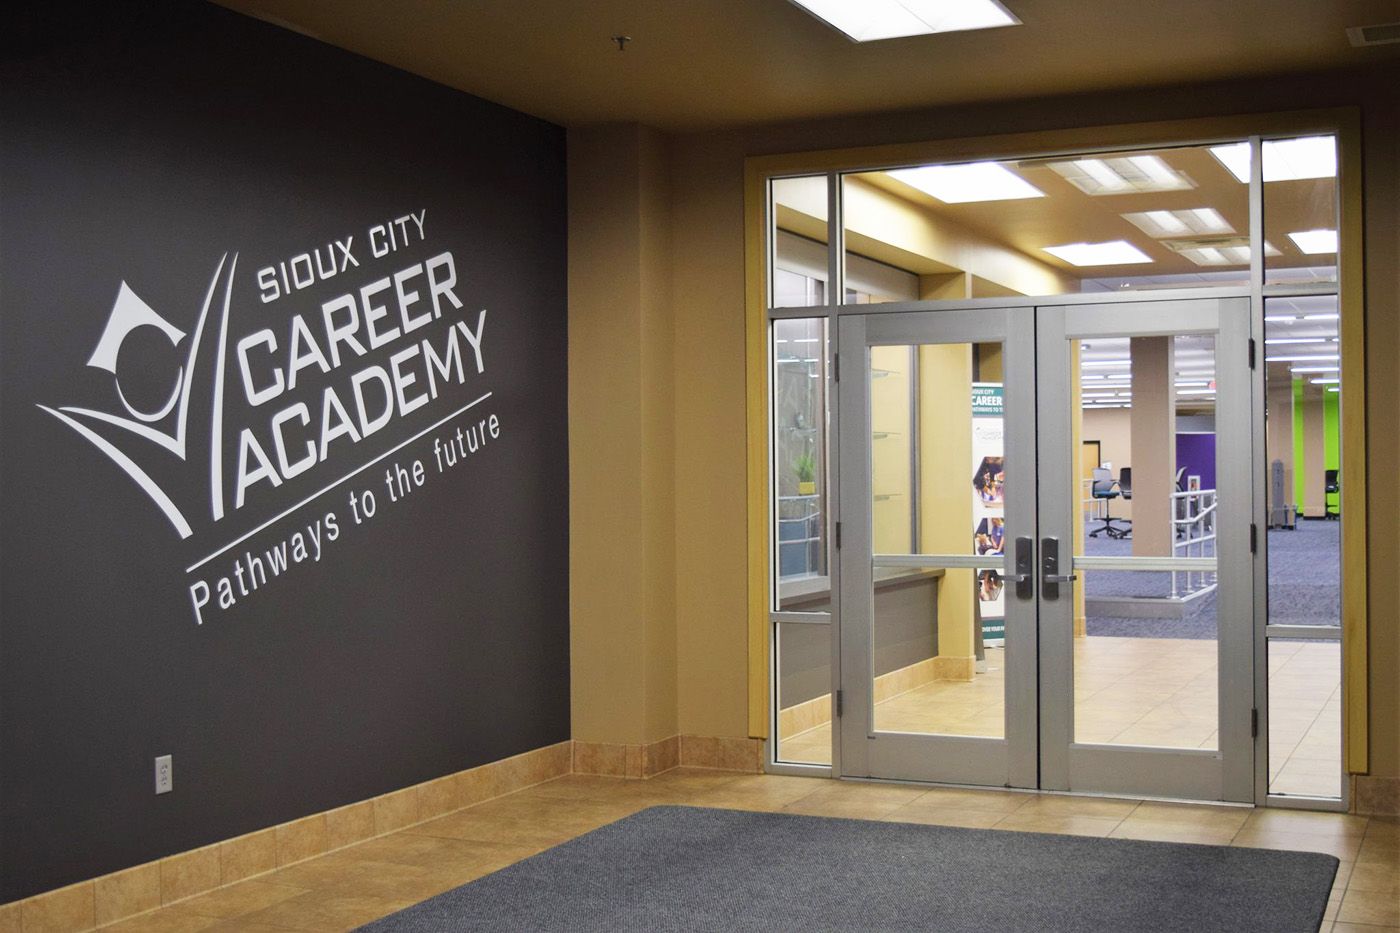 Sioux City Career Academy